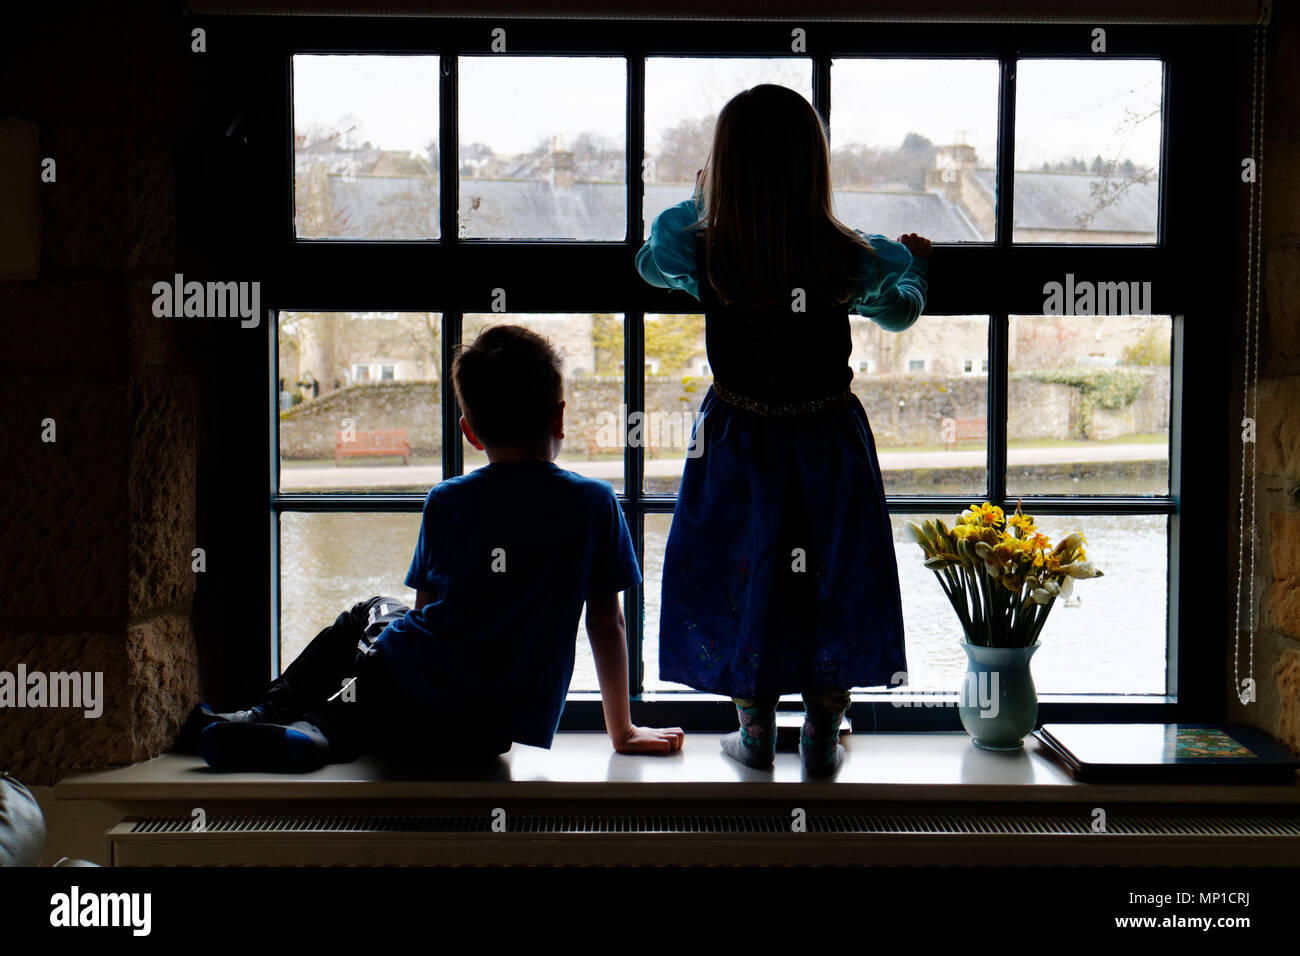 Frère (5 ans) et sa soeur (3 ans) était assis sur un rebord de fenêtre, silhouetté contre une fenêtre à guillotine avec la rivière Wye dans l'extérieur Bakewell Banque D'Images